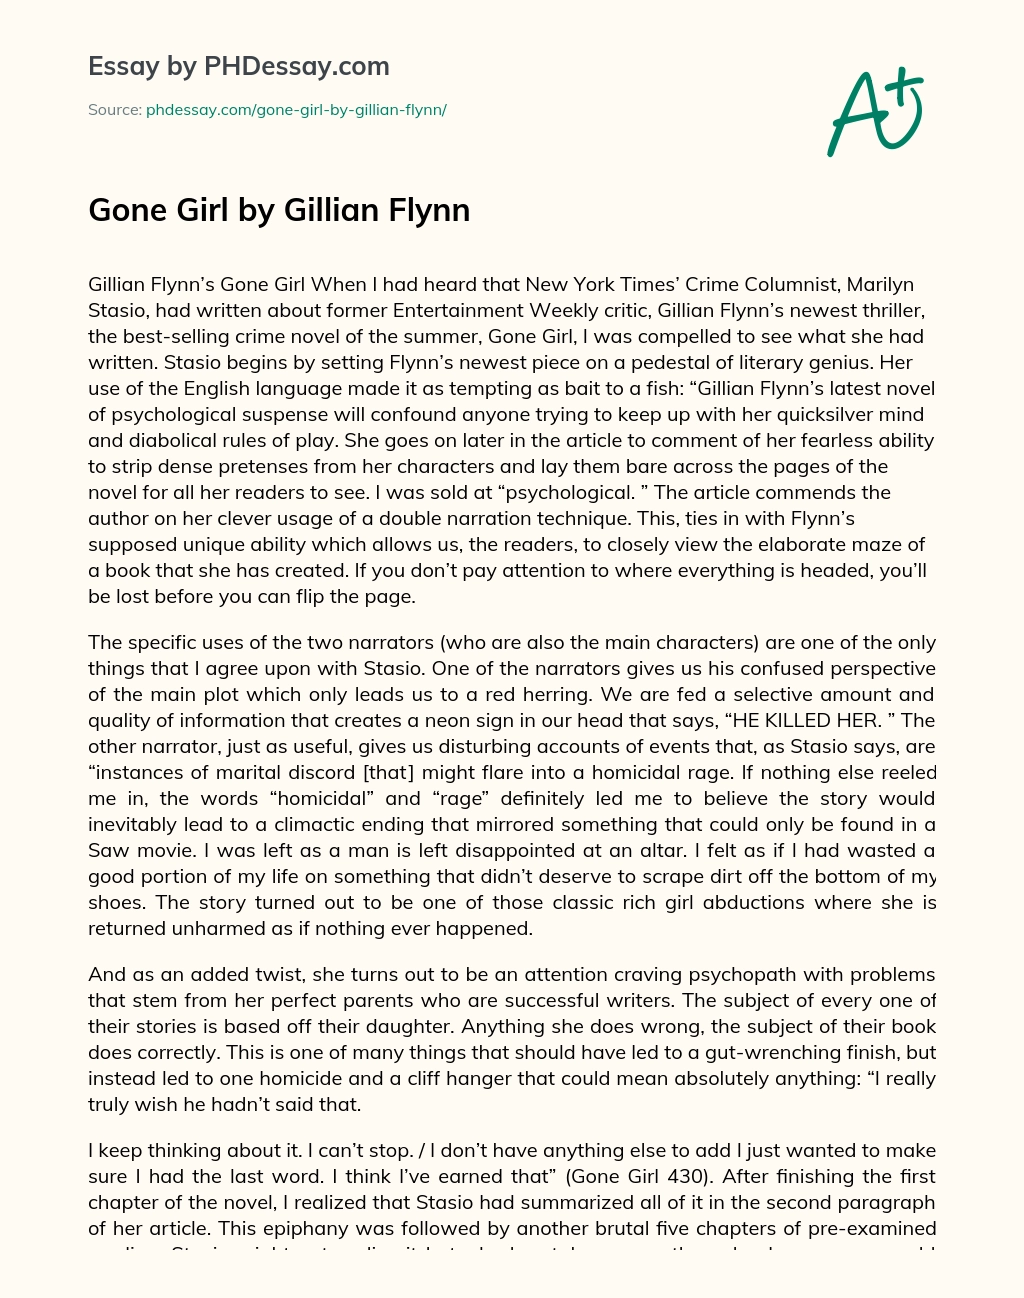 Gone Girl by Gillian Flynn essay